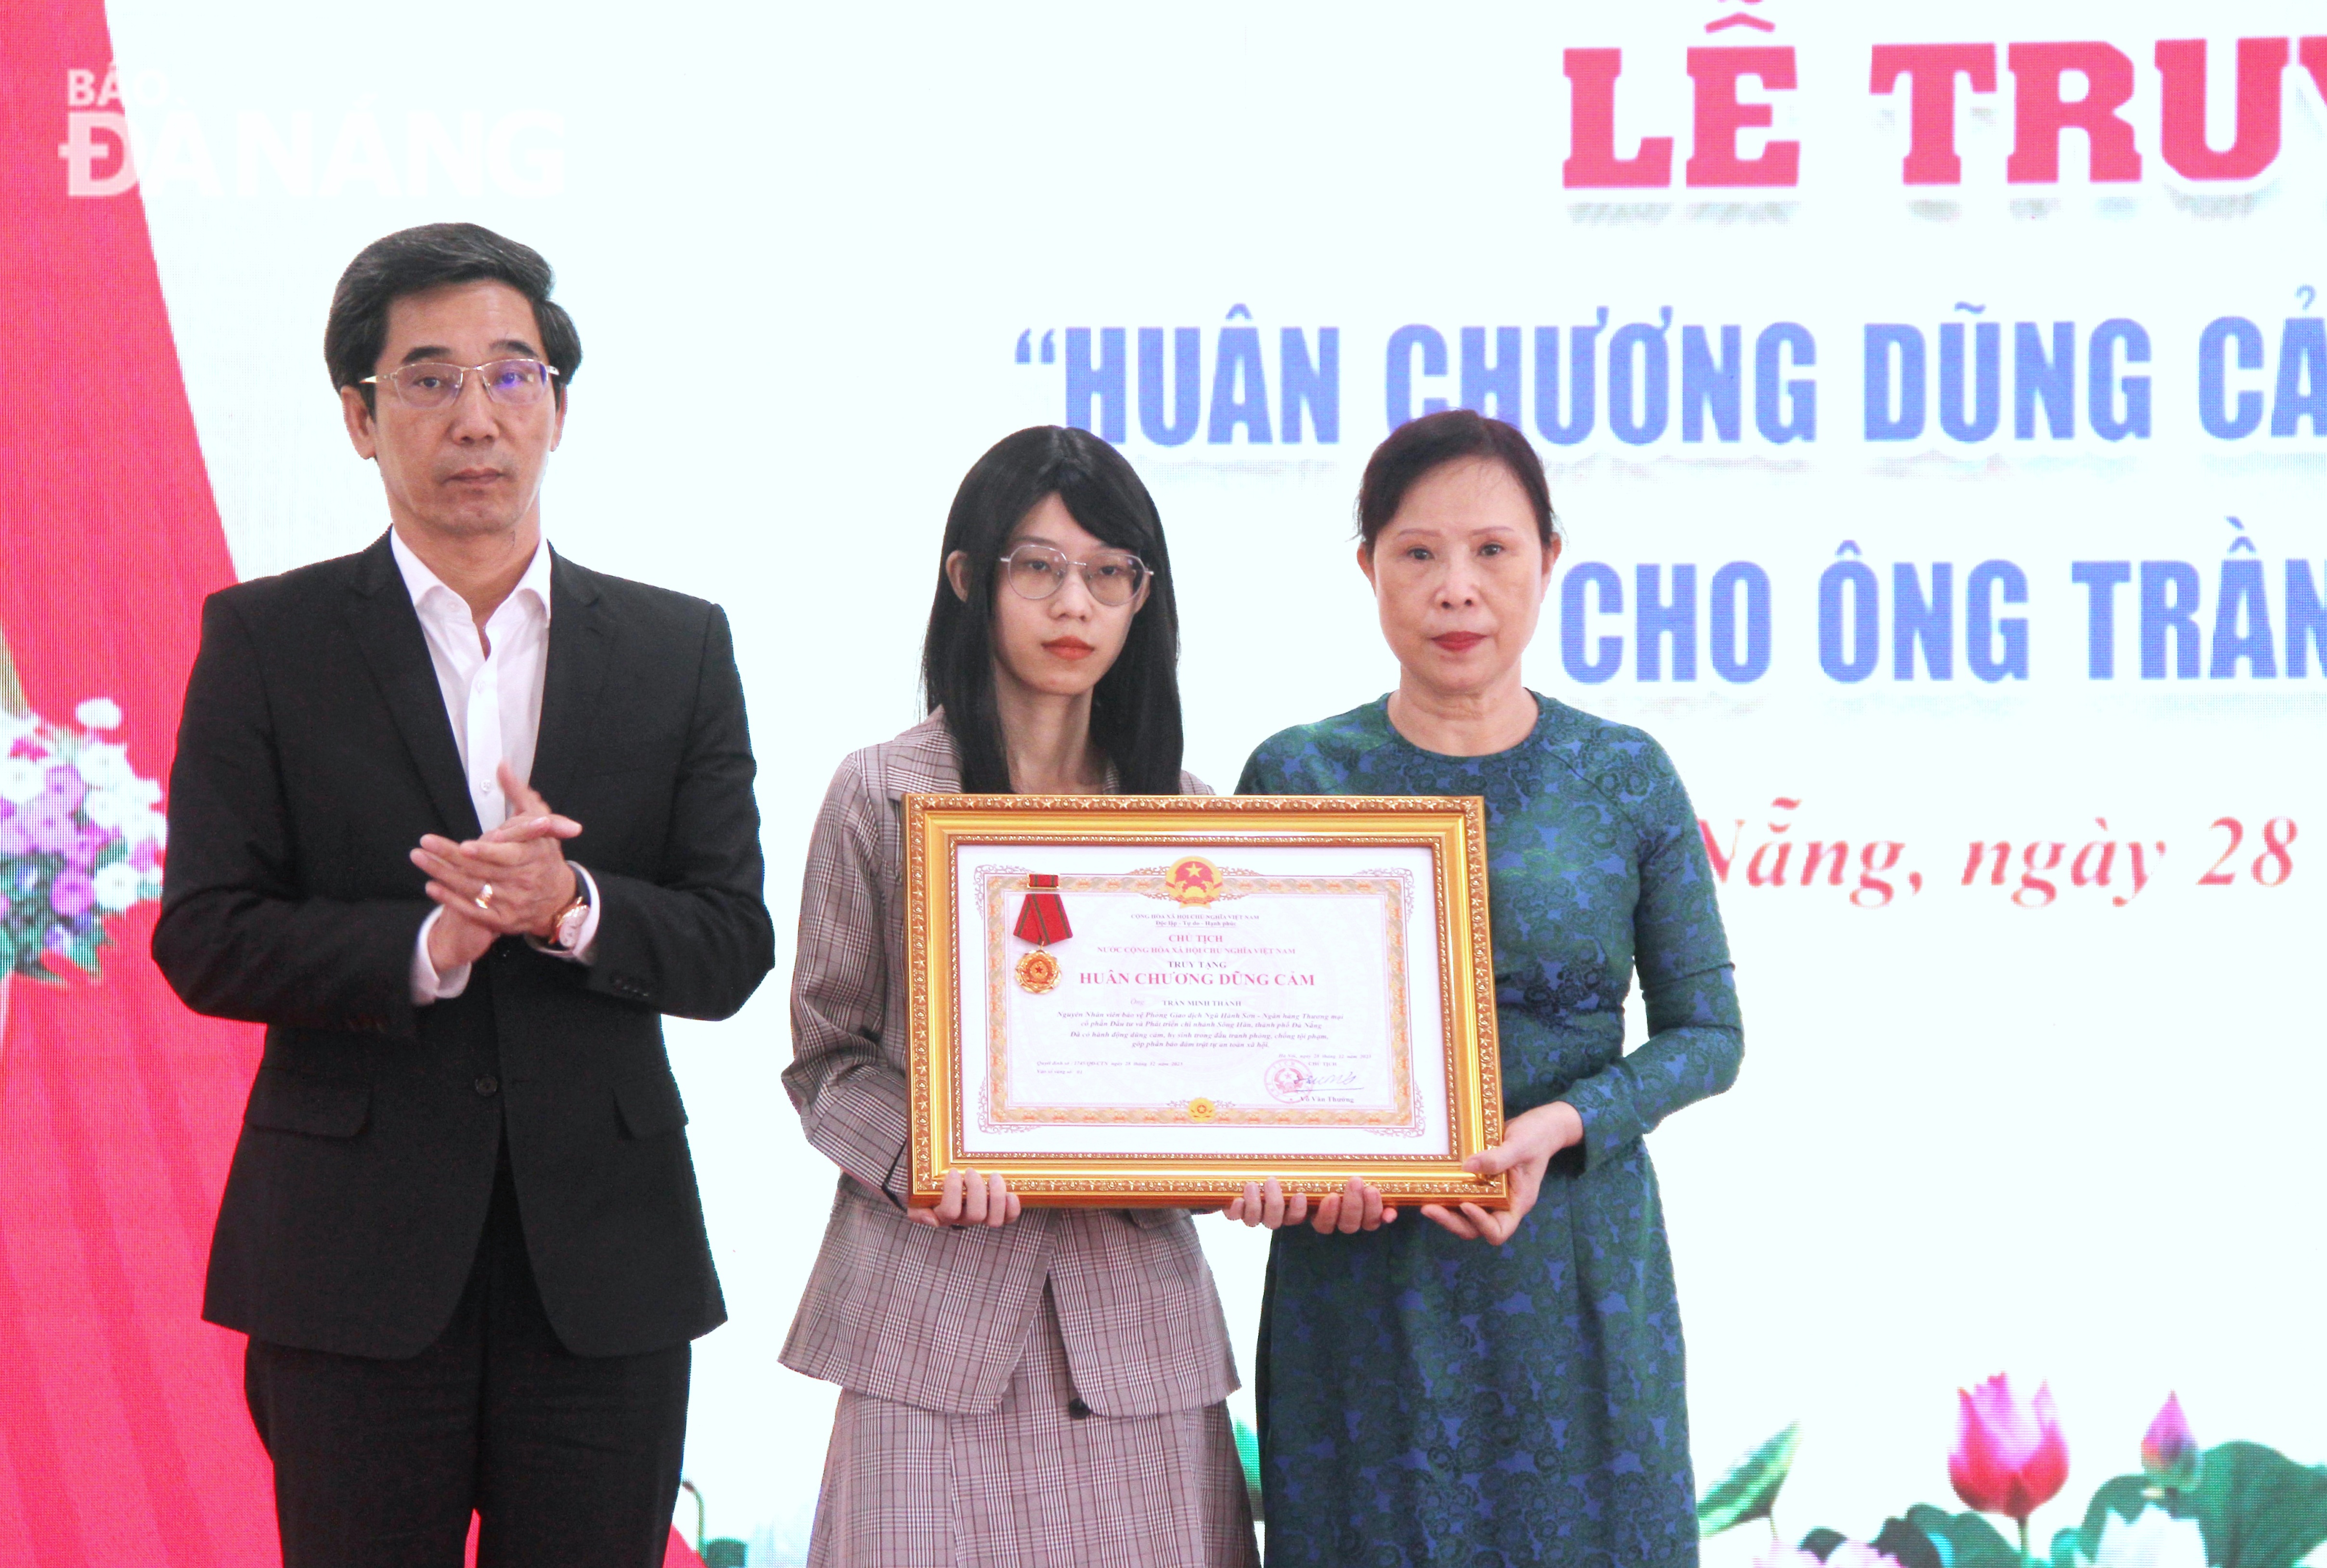 Đà Nẵng: Truy tặng Huân chương dũng cảm cho nhân viên bảo vệ ngân hàng hy sinh